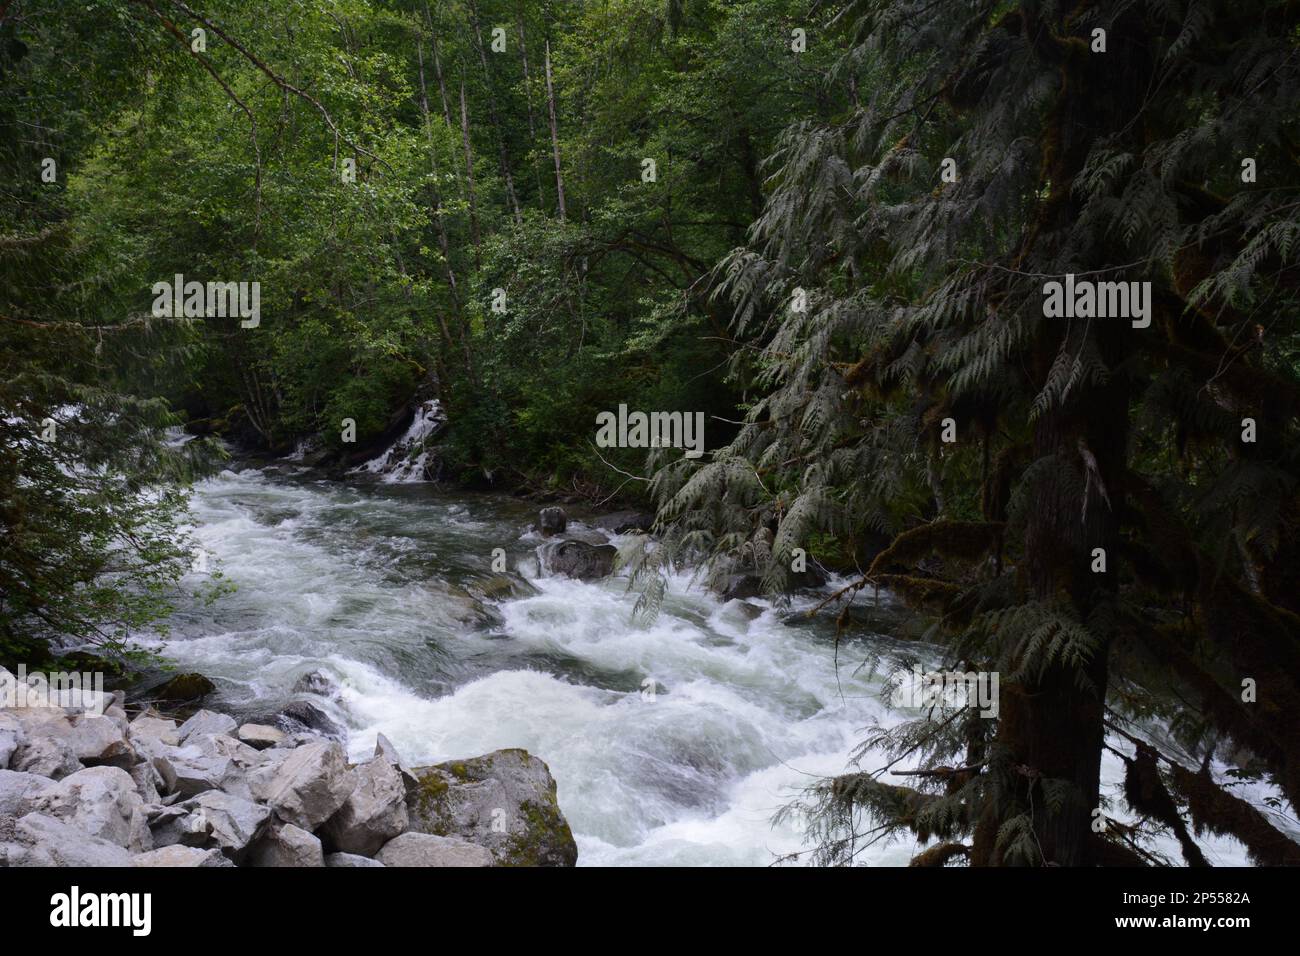 Los rápidos de Silverhope Creek, un afluente del río Fraser, en la selva templada de coníferas, cerca de Hope, Columbia Británica, Canadá. Foto de stock